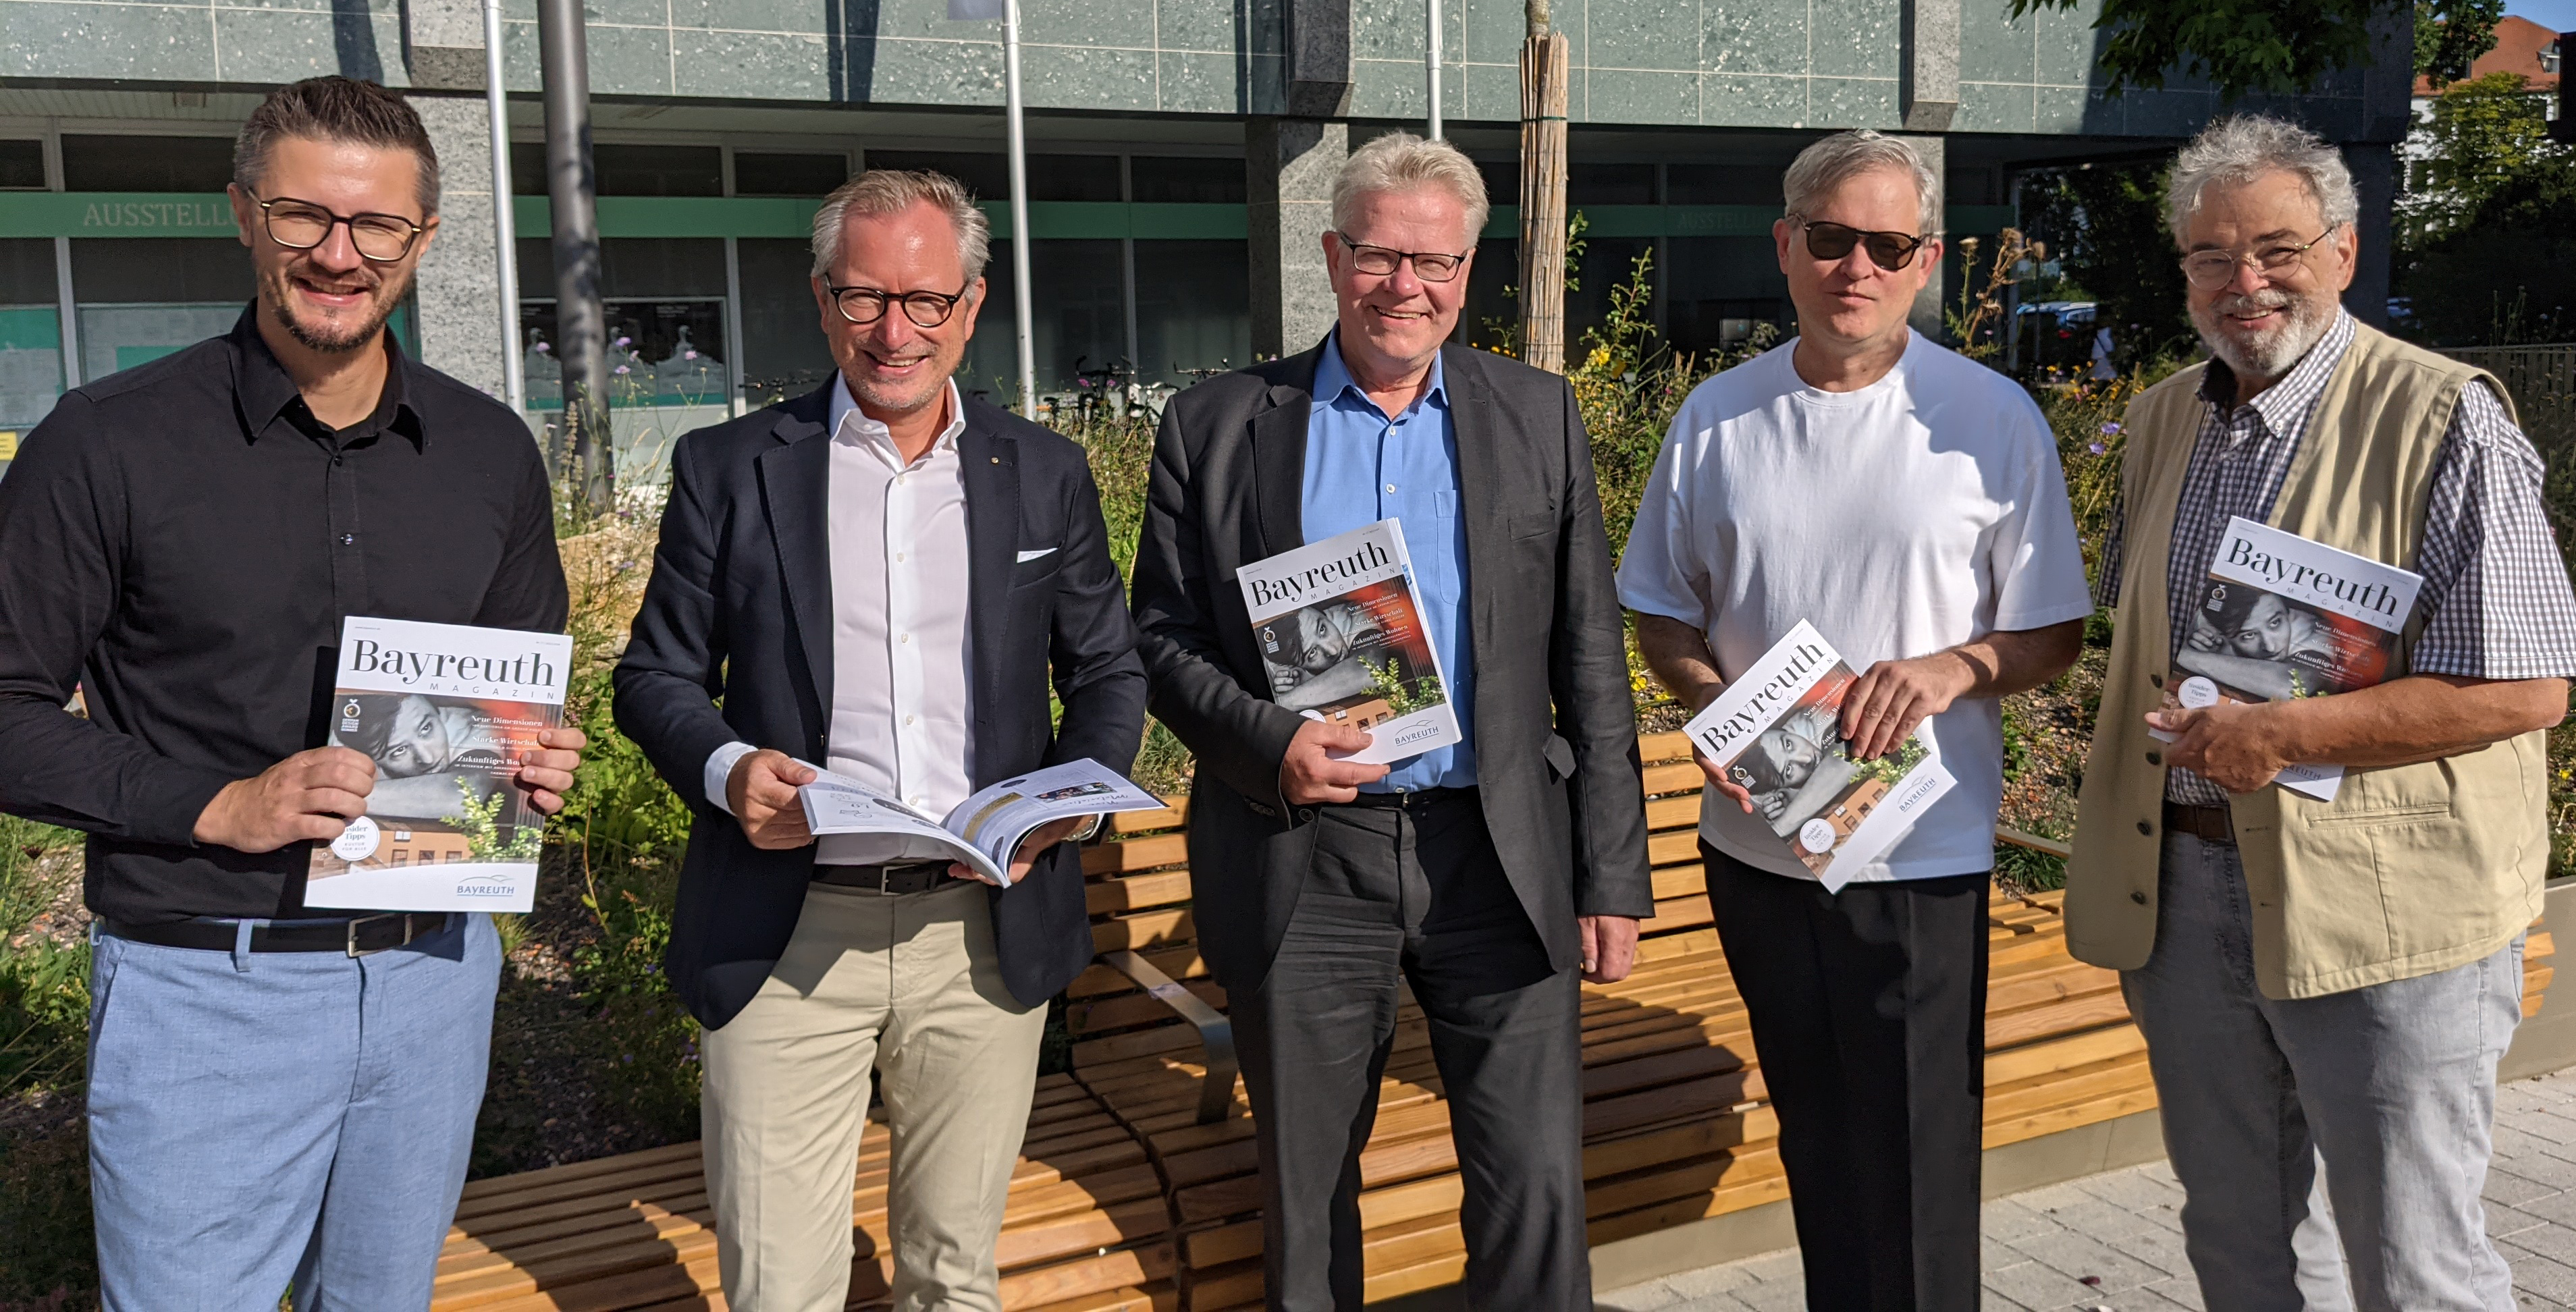 Fünf Männer stehen vor dem Rathaus und halten ein Bayreuth Magazin in ihren Händen.